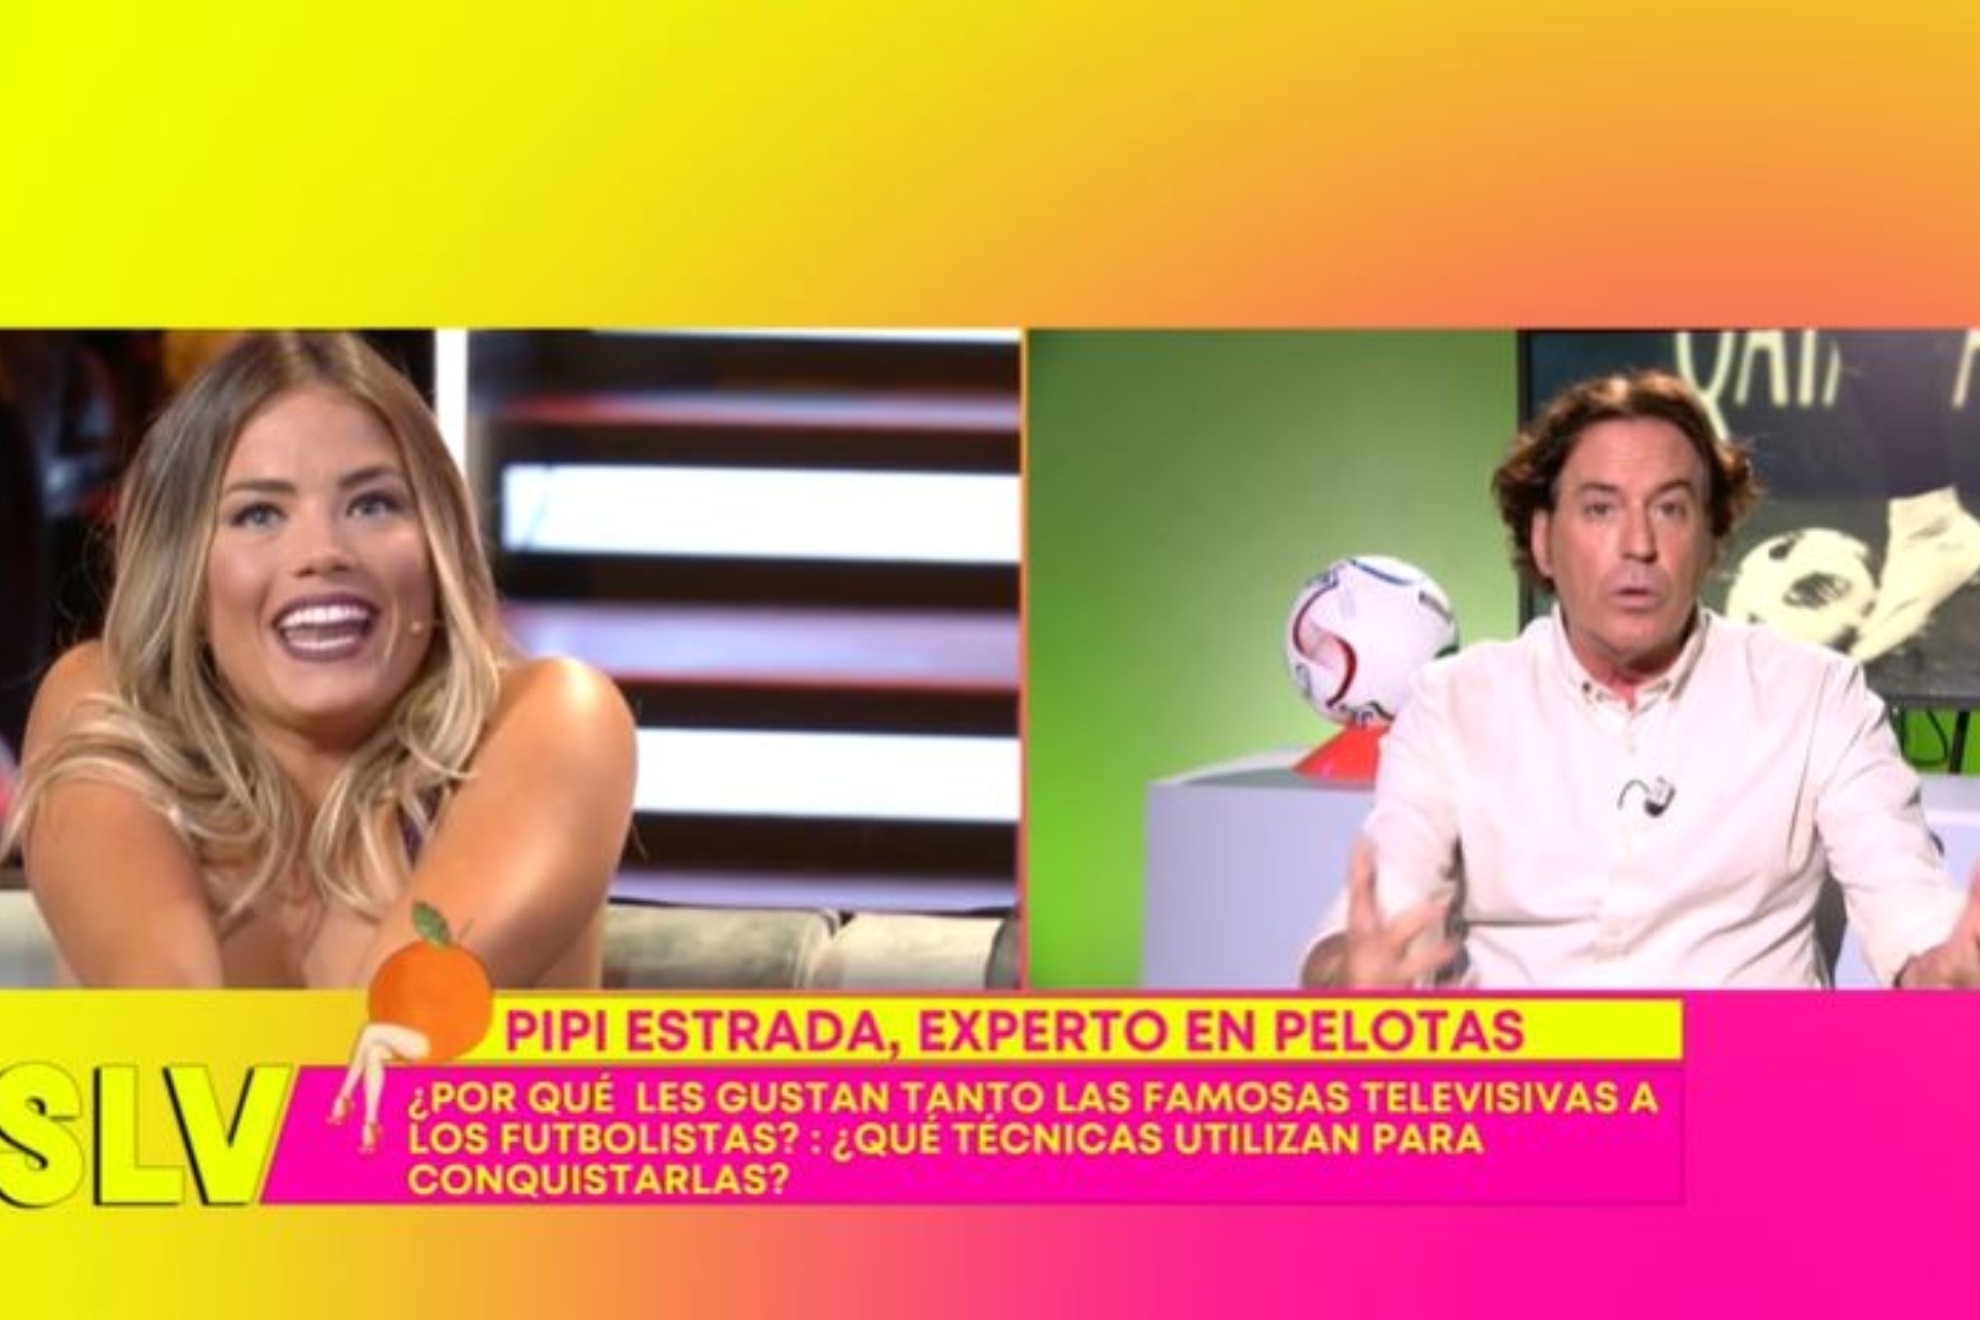 Pipi Estrada explica cmo ligan los futbolistas y qu mujeres les dan "morbo"